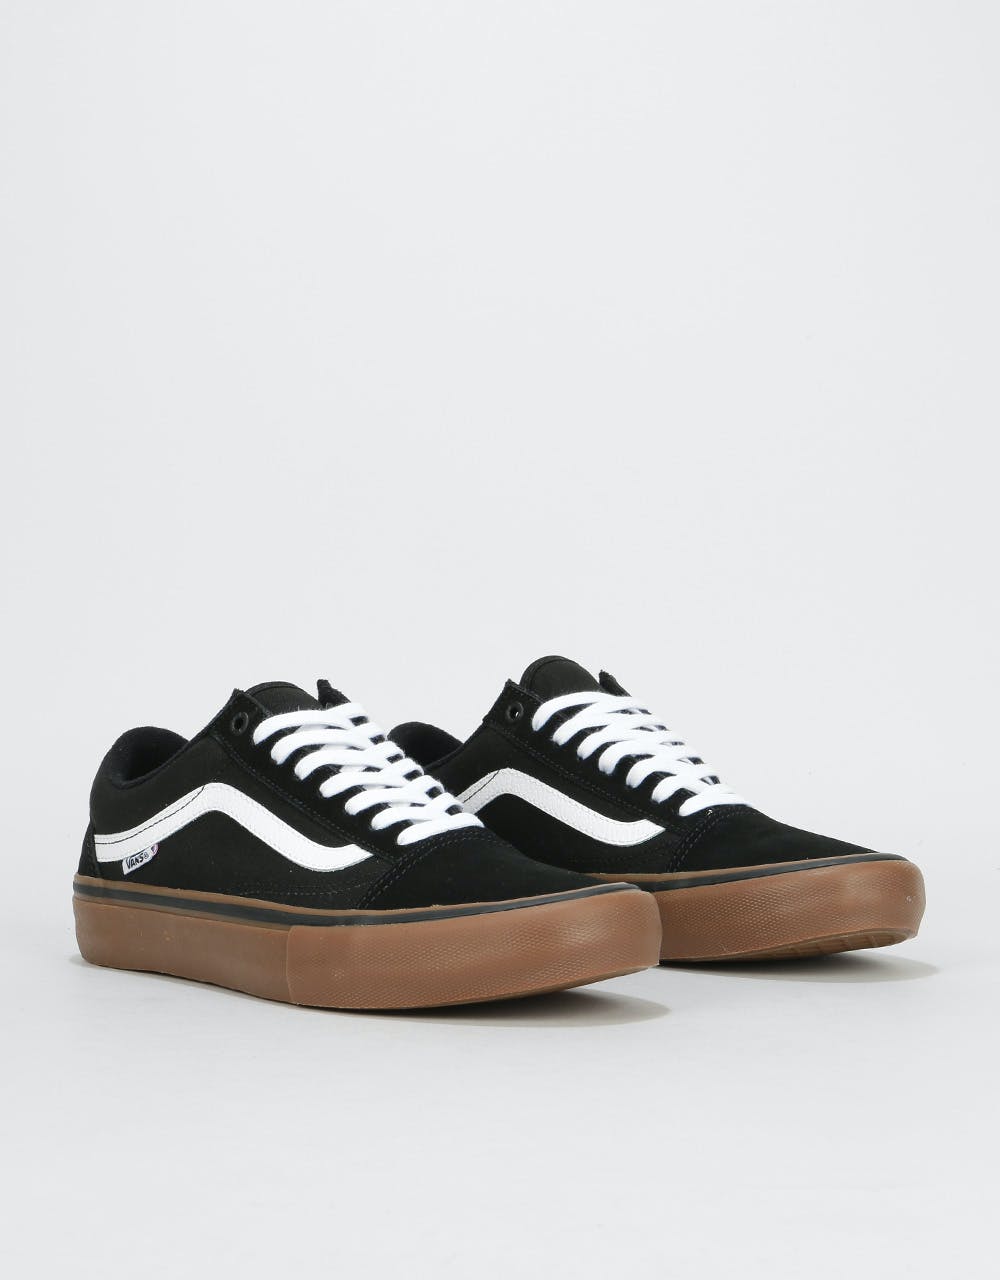 Vans Old Skool Pro Skate Shoes - Black/White/Medium Gum